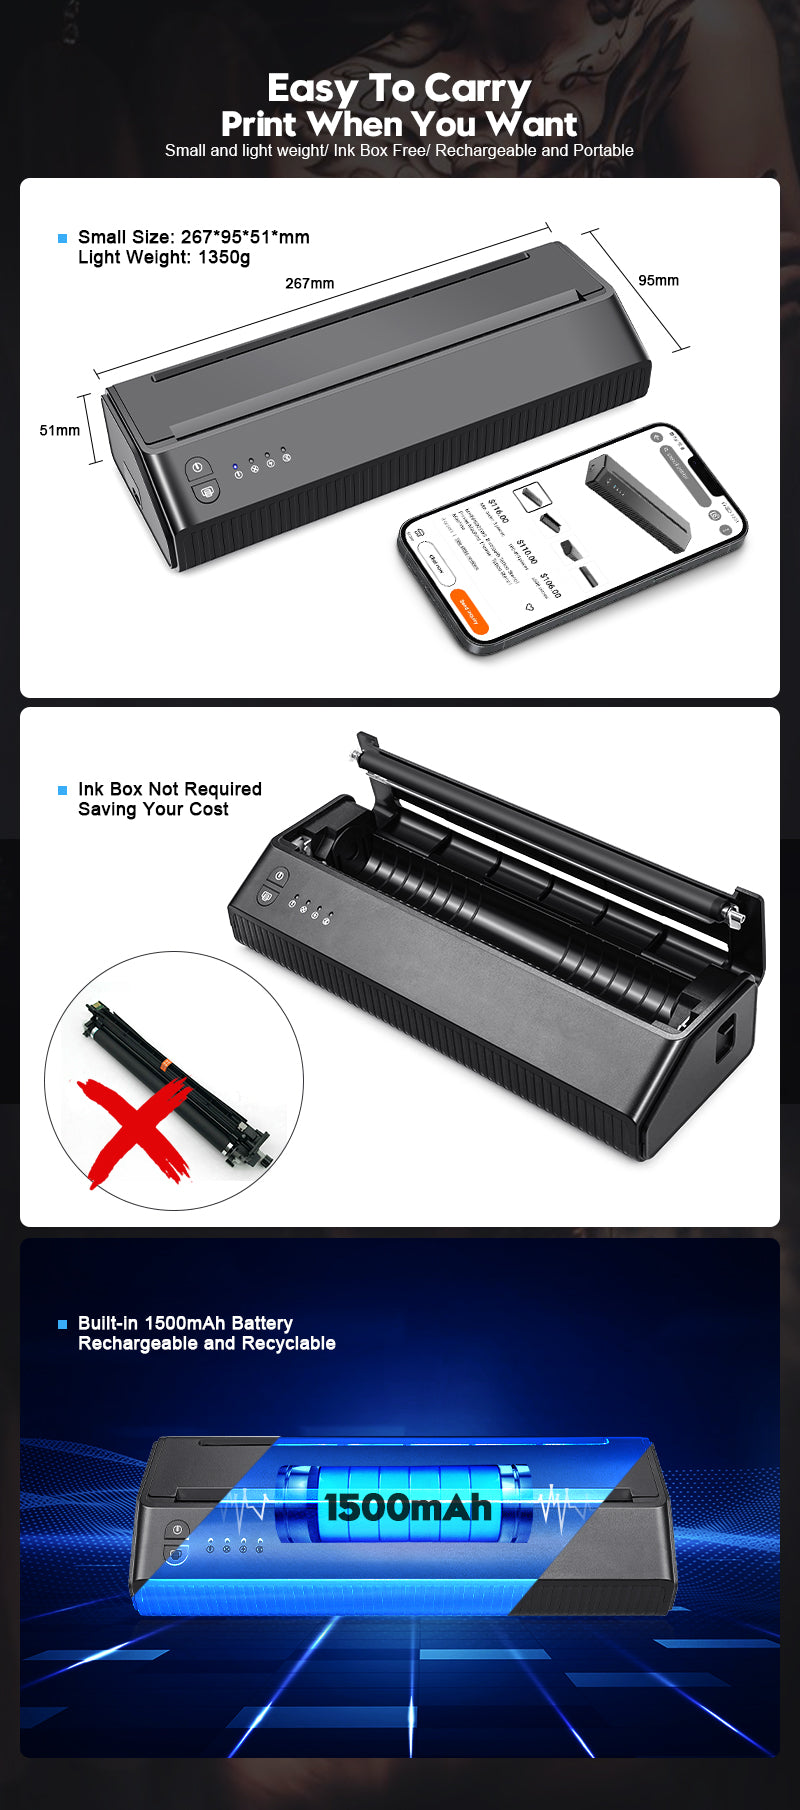 Wireless Bluetooth/USB Thermal Tattoo Stencil Transfer Printer Machine -  Biomaser